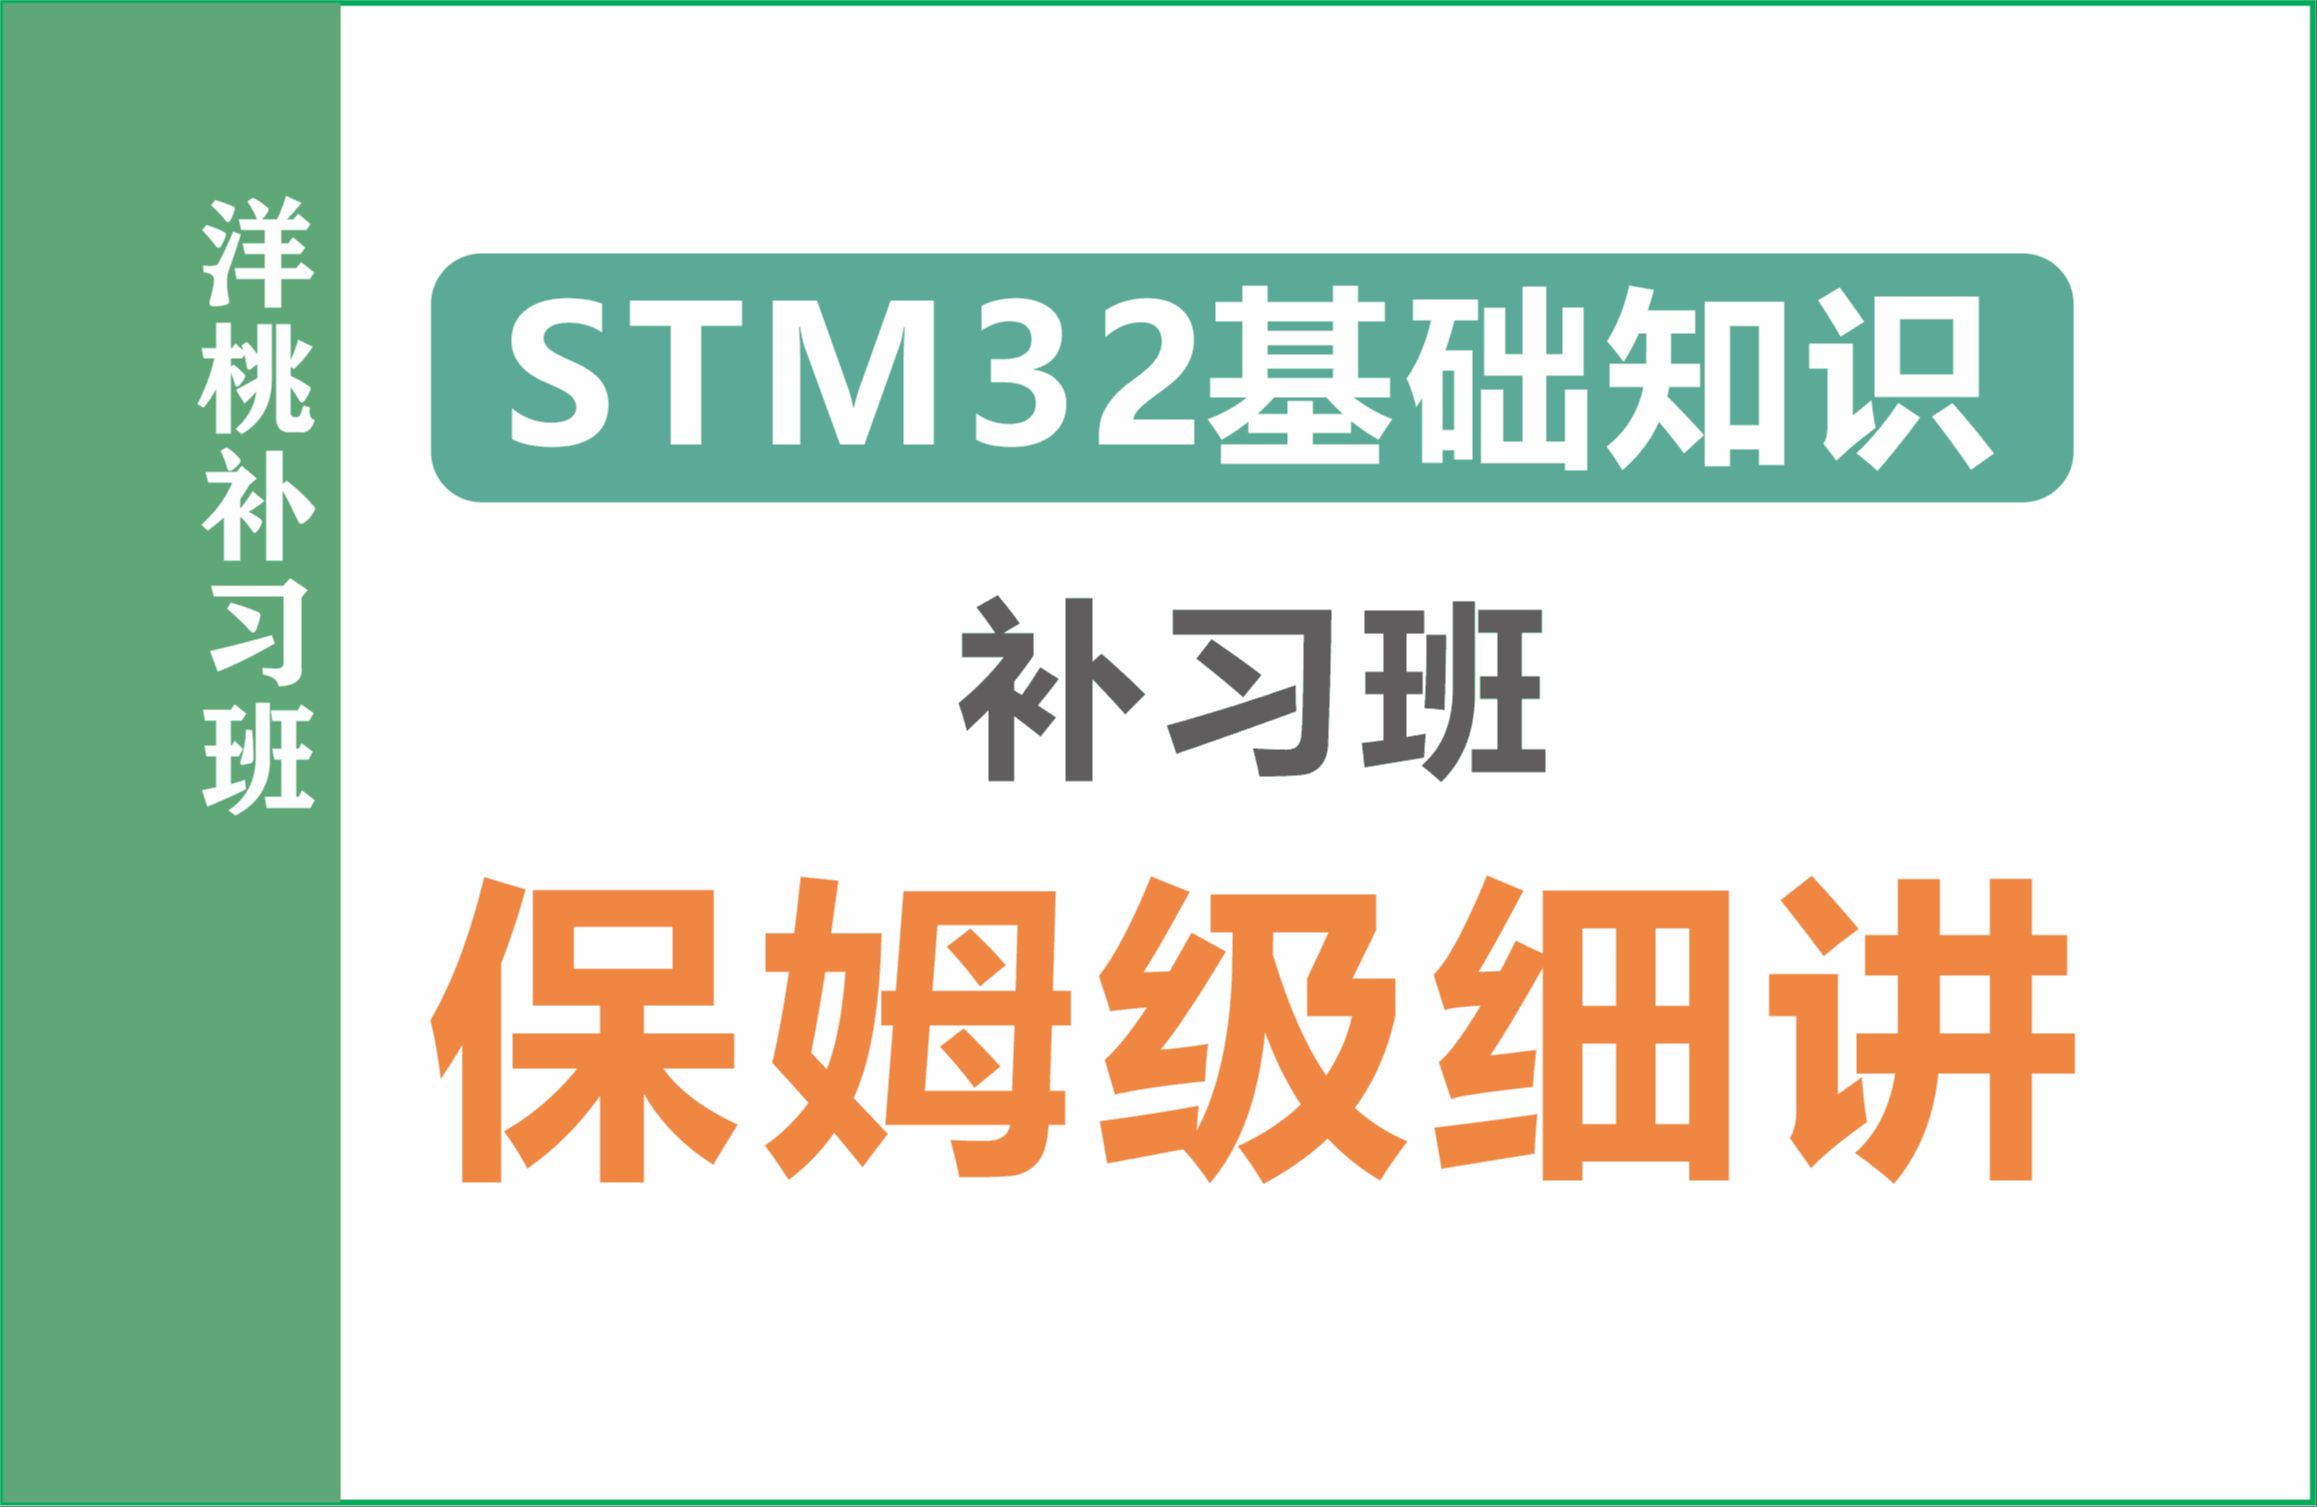 【洋桃电子】洋桃补习班（为0基础的初学者补足基础知识）STM32入门100步系列视频